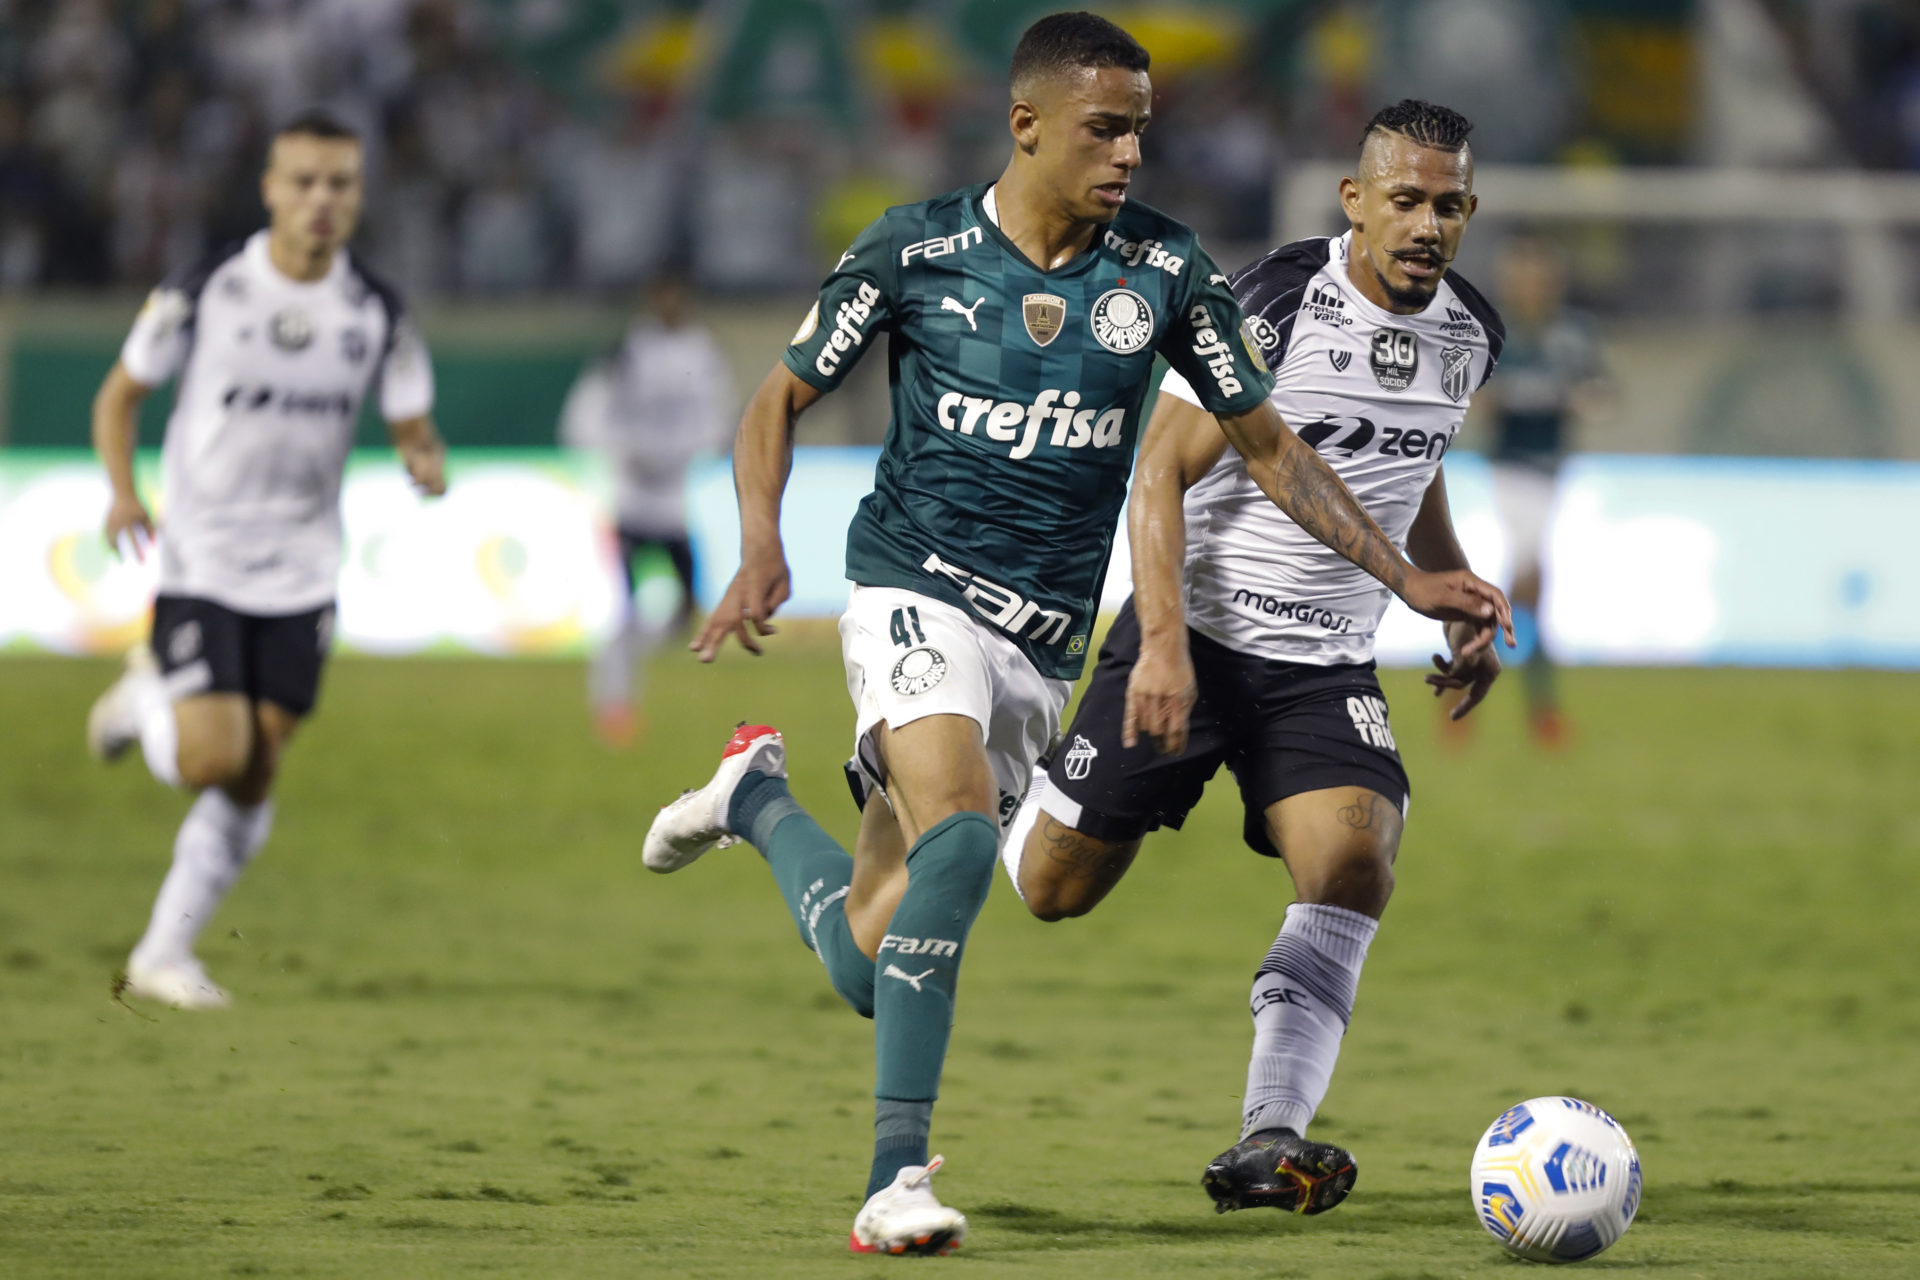 Palmeiras v Ceara - Brasileirao 2021